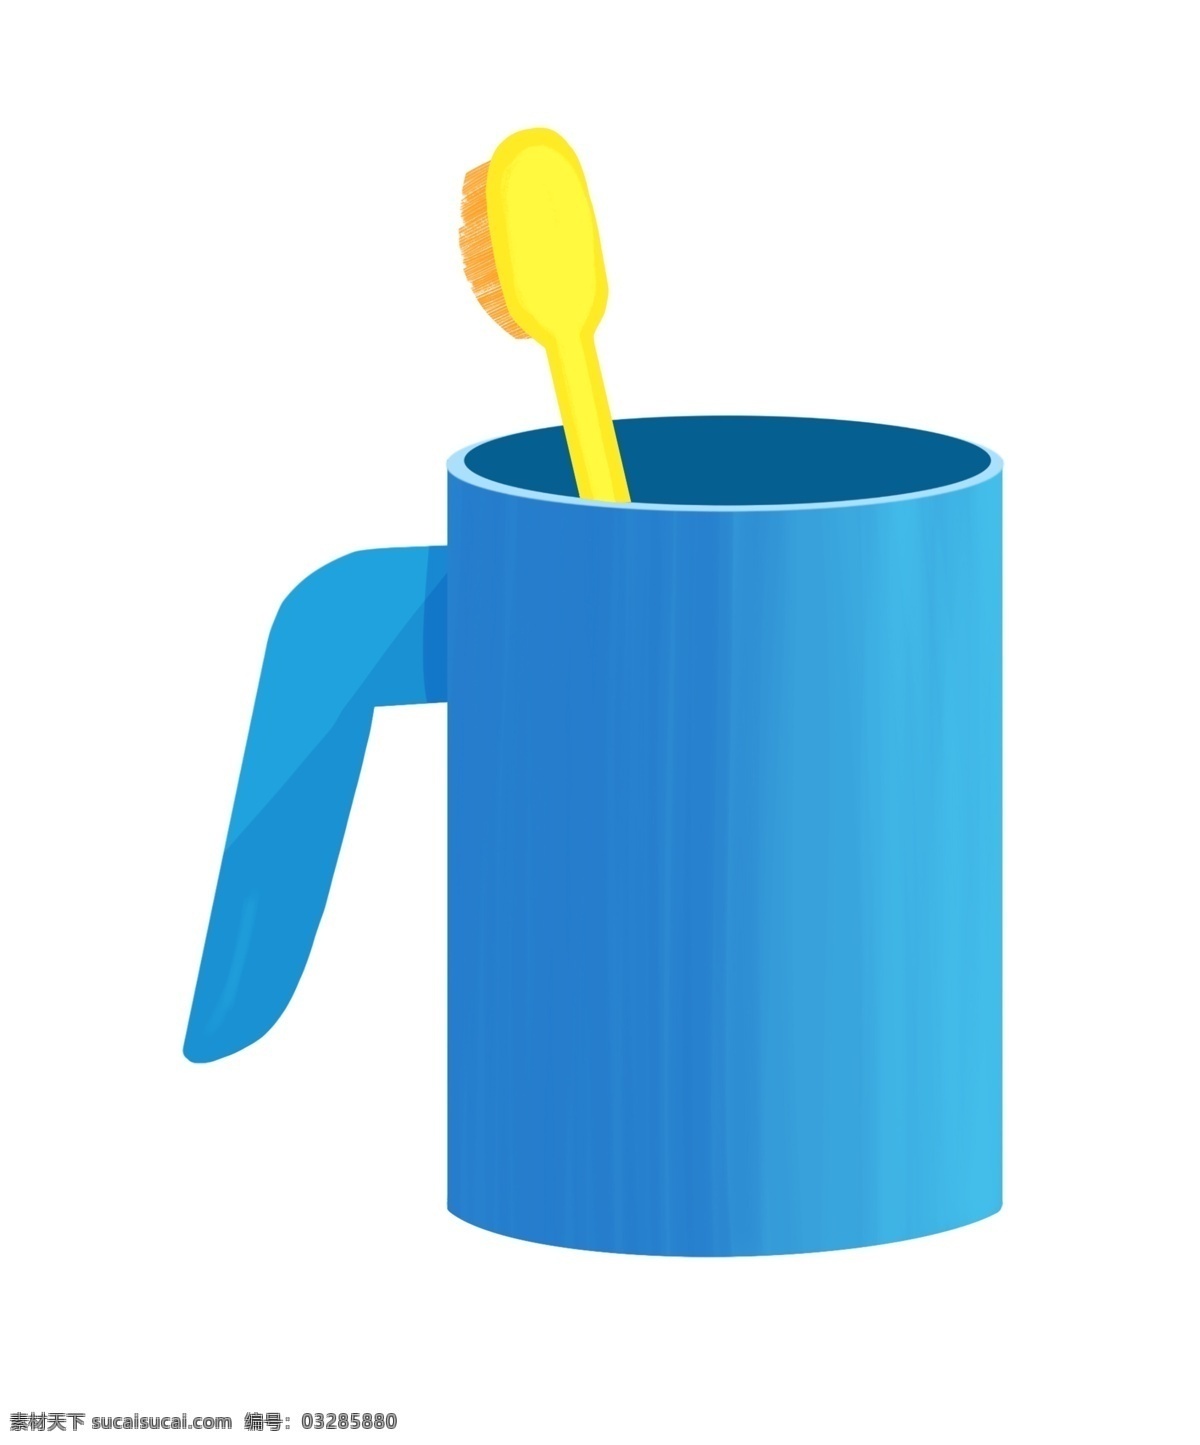 蓝色 牙刷 桶 蓝色的牙刷桶 洗漱 用品 手绘牙刷桶 卡通牙刷桶 牙刷桶装饰 黄色的牙刷